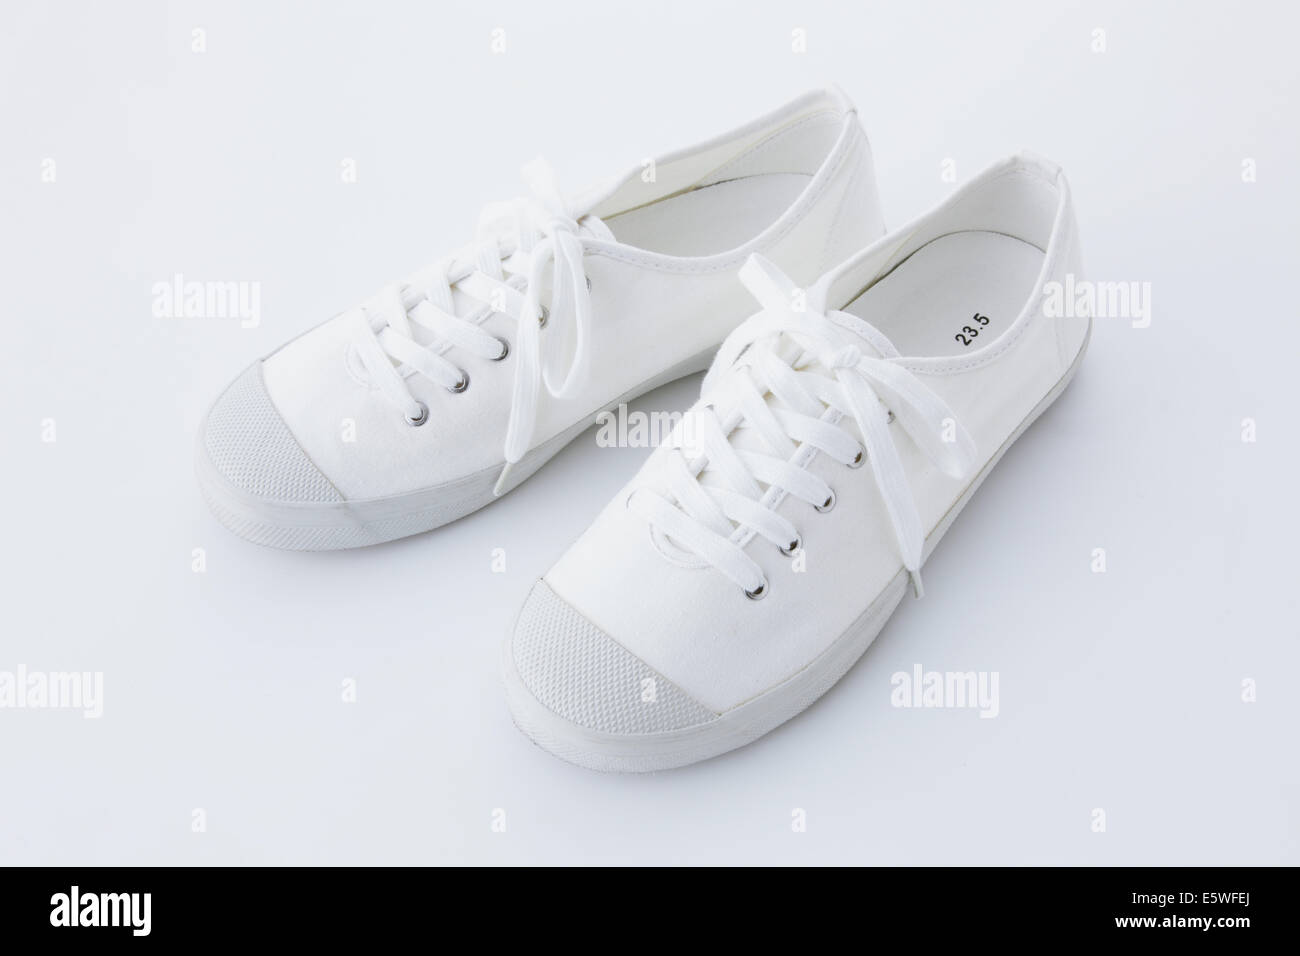 Japanese shoes immagini e fotografie stock ad alta risoluzione - Alamy